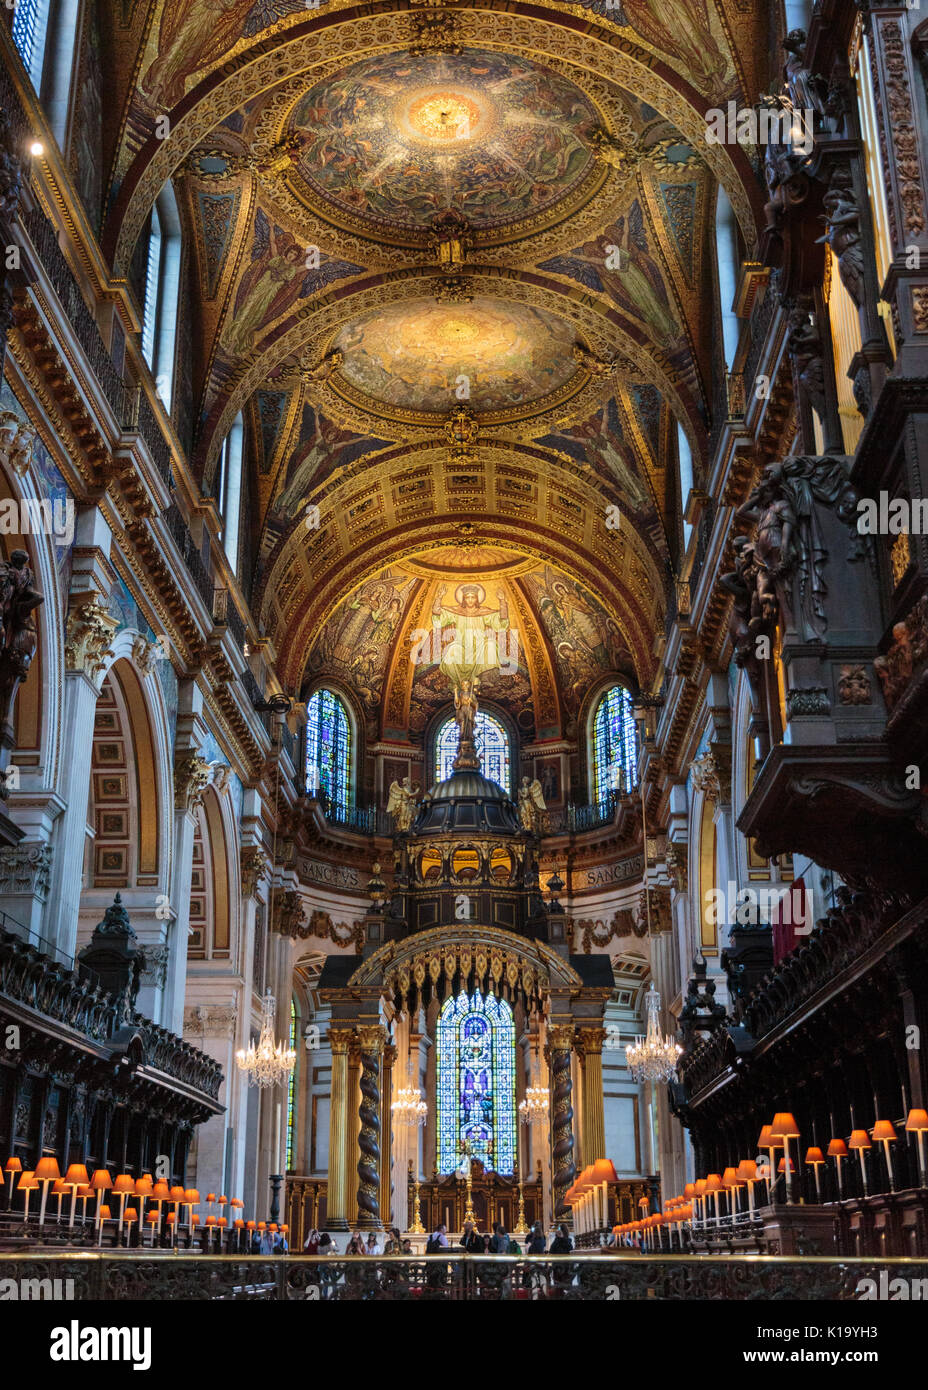 Die St Paul's Kathedrale Innenraum, Blick vom Chor und Chorgestühl in Richtung Hochaltar und Decke, London UK Stockfoto